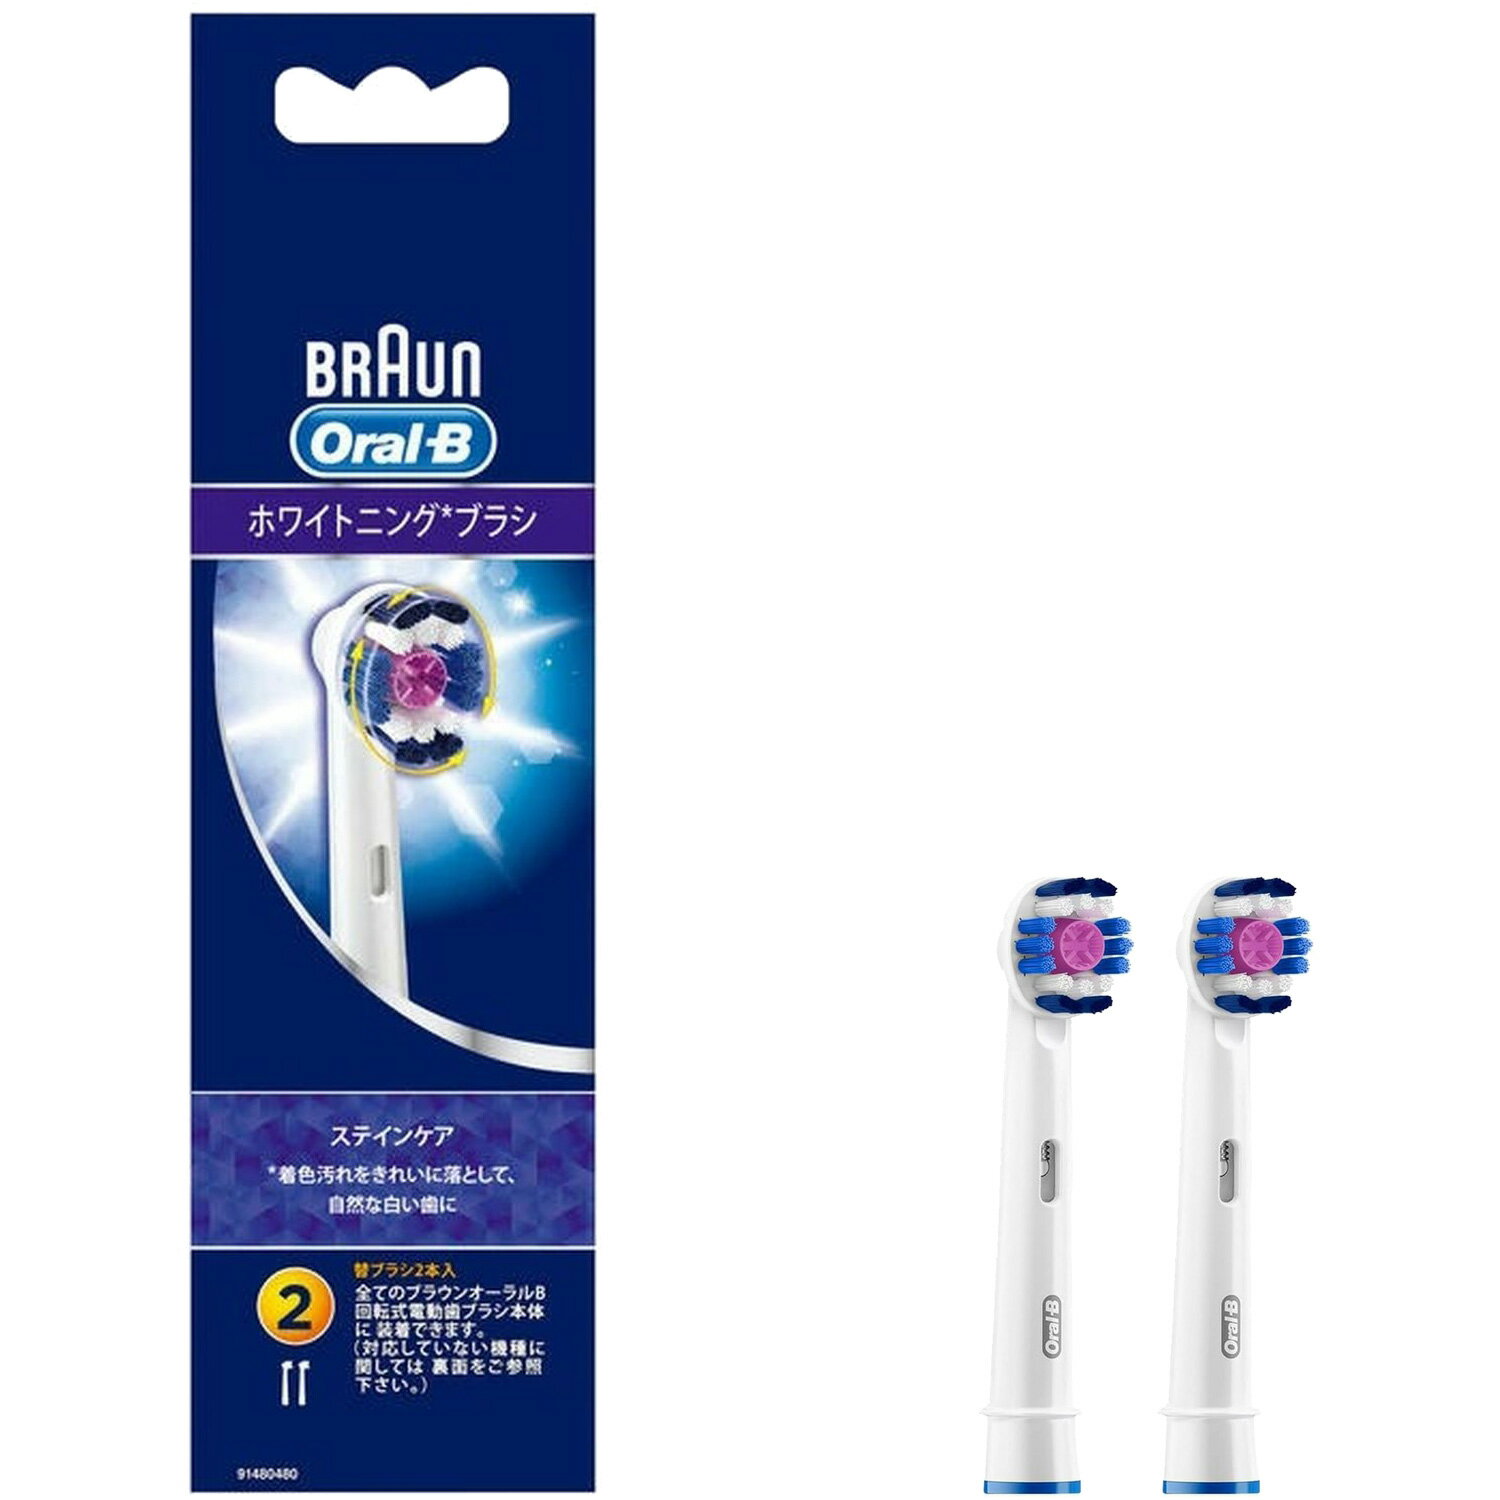 ブラウン Oral-B オーラルB 電動歯ブラシ 替えブラシ ステインケア 2本入 EB18-2G